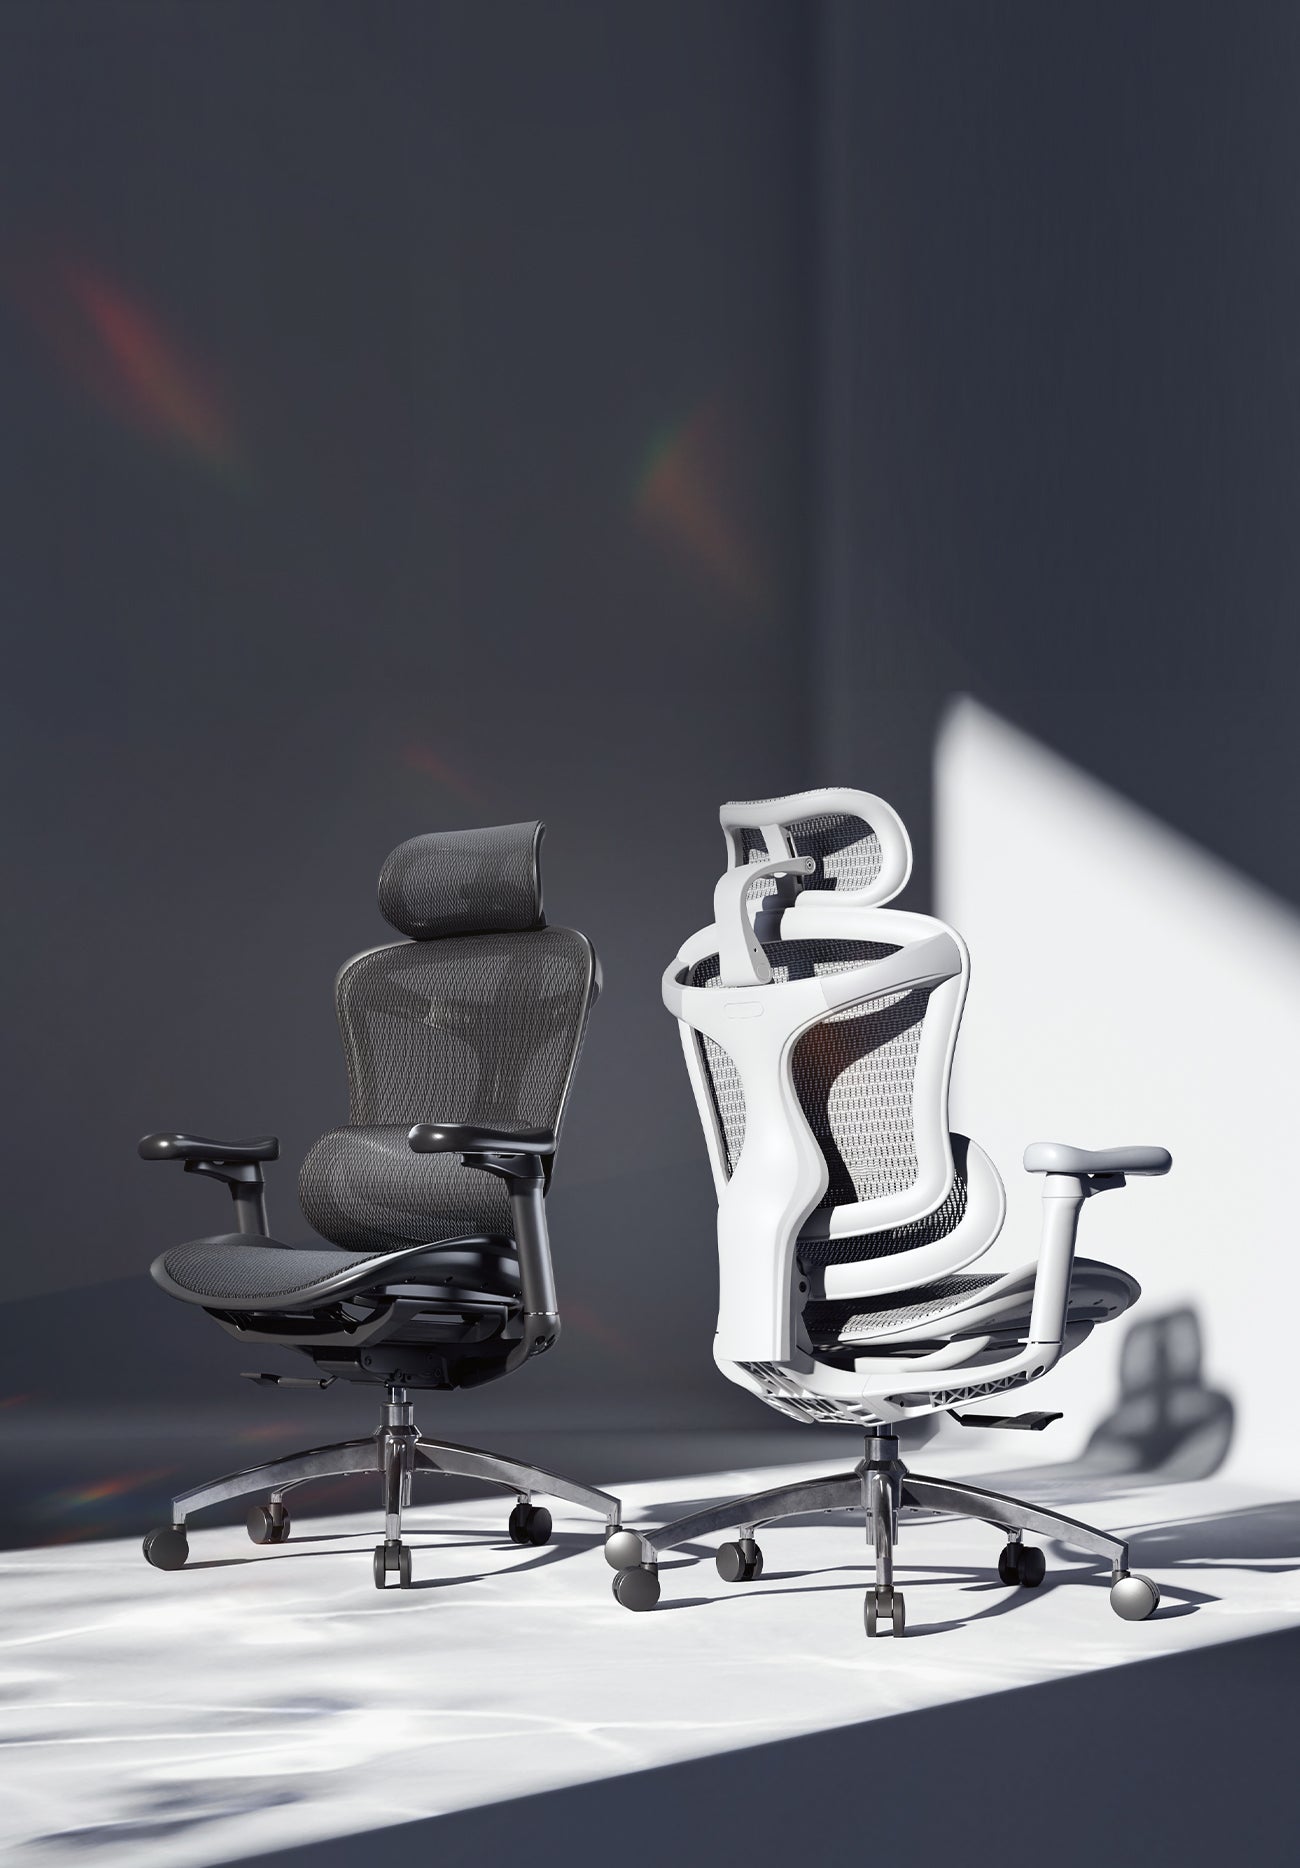 SIHOO Doro-C300 Ergonomic Chair